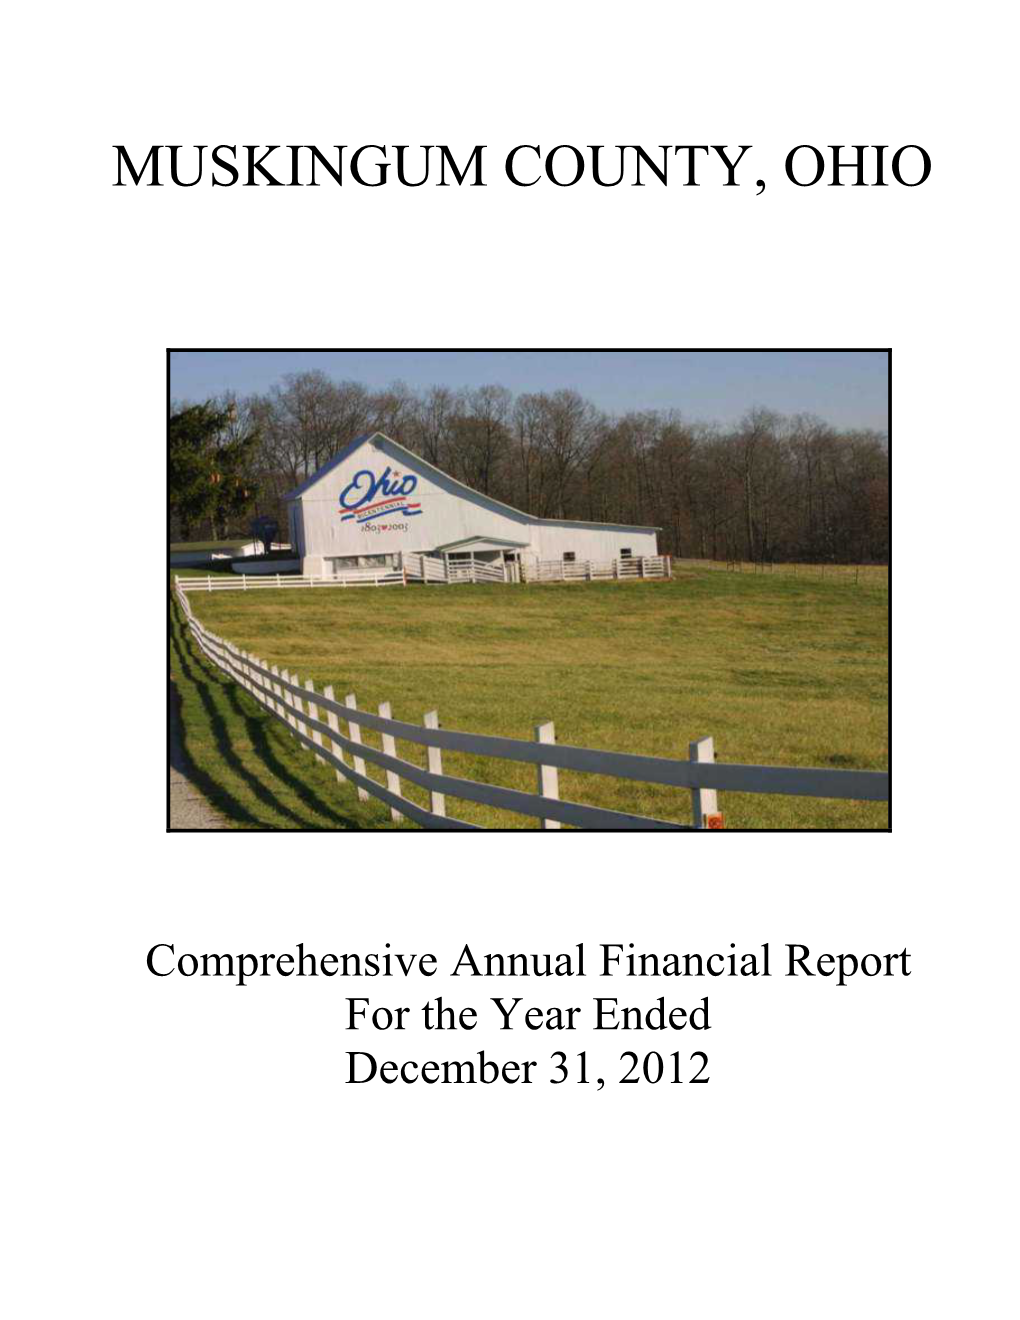 Muskingum County, Ohio